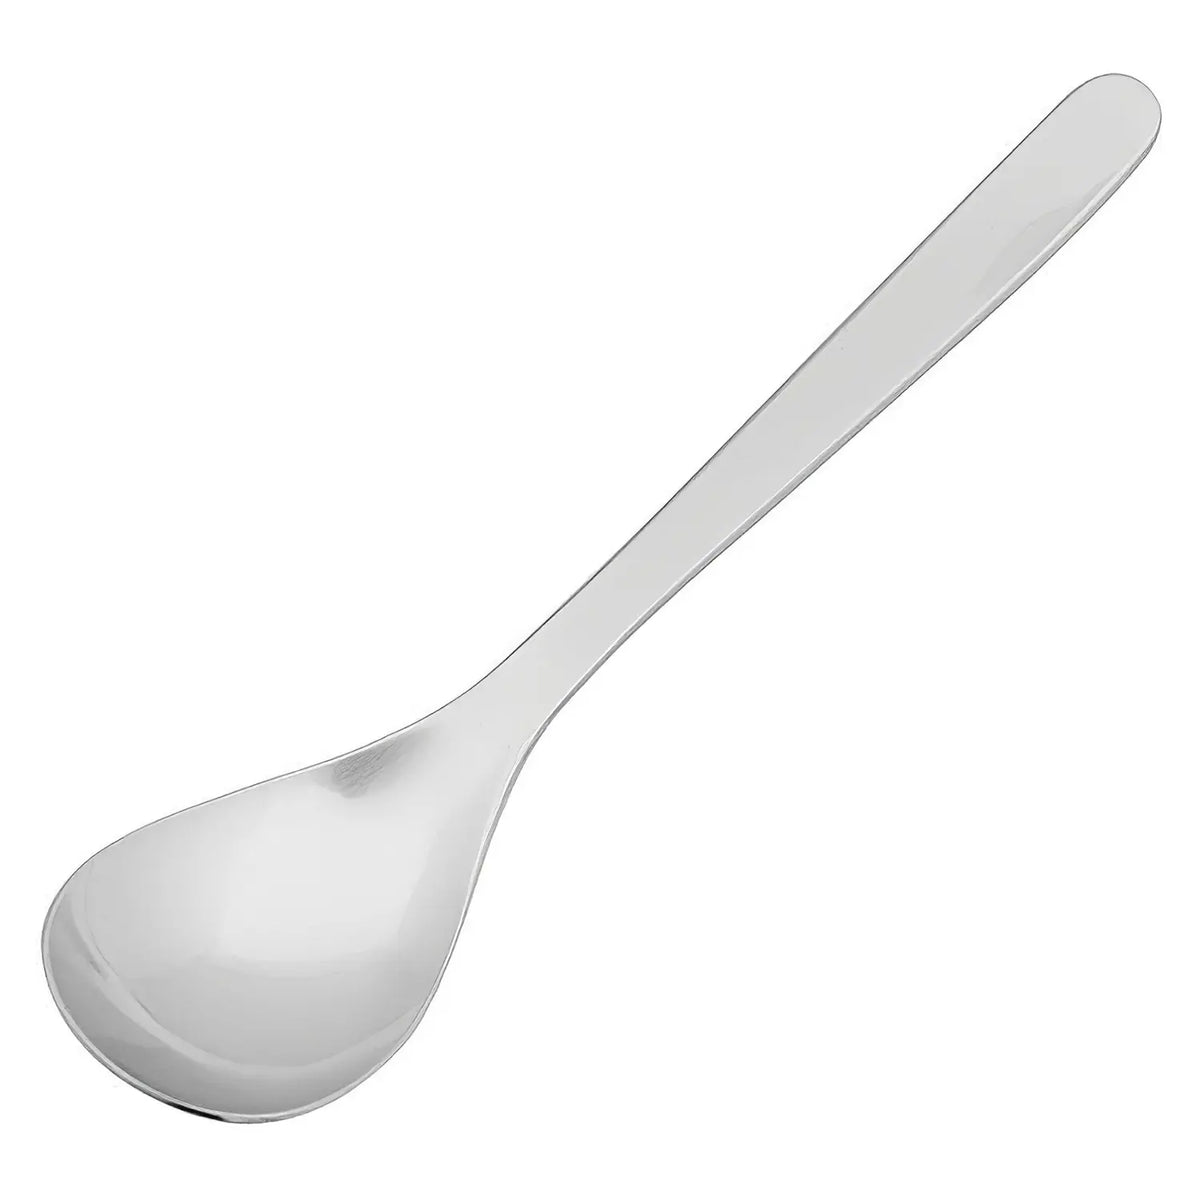 Sori Yanagi Stainless Steel Dinner Spoon 19.4cm